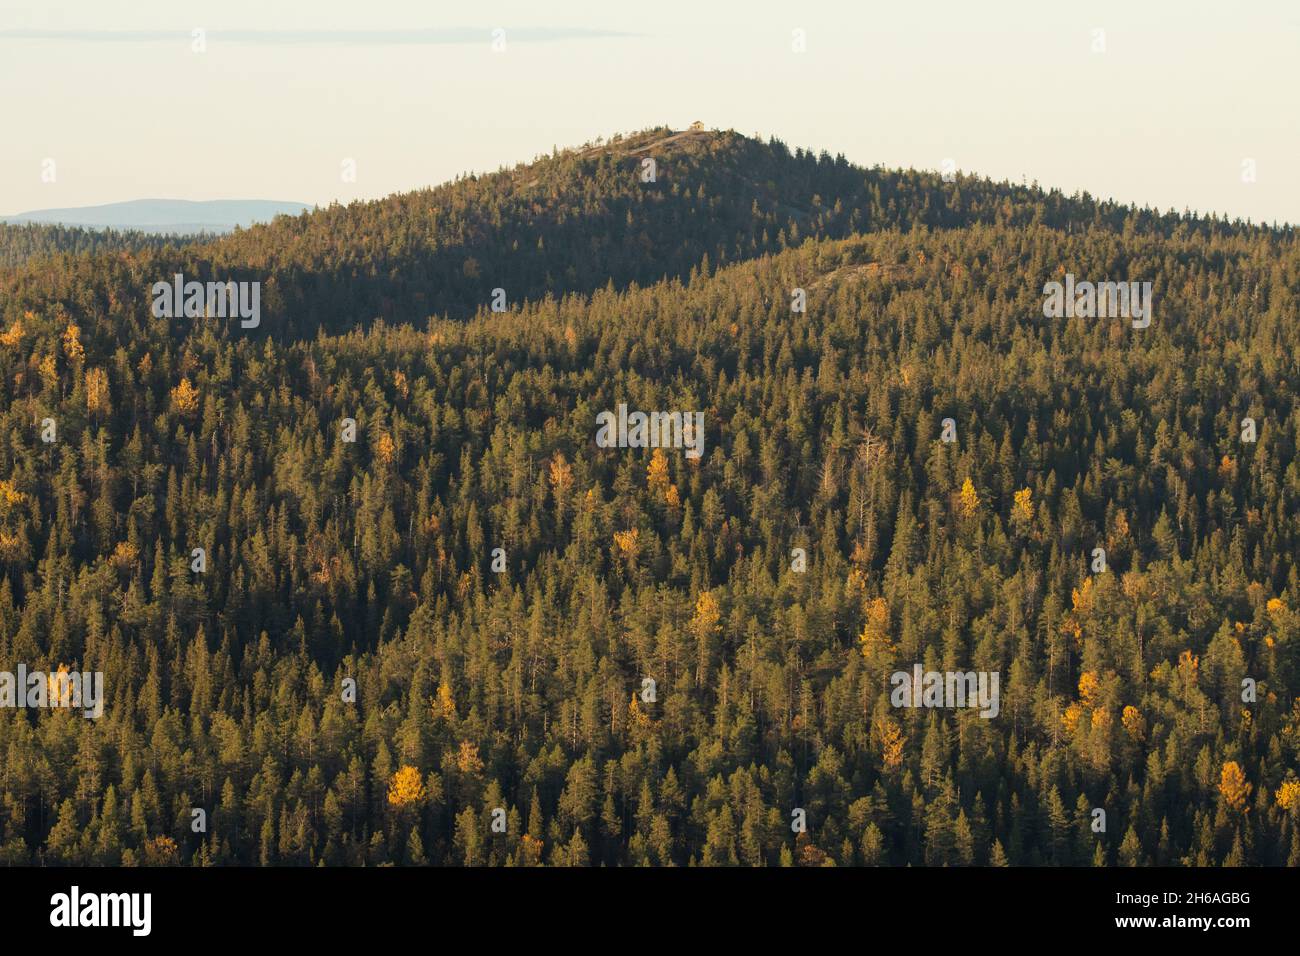 Prevalentemente foresta di taiga conifere che copre le colline di Valtavaara nei pressi di Kuusamo, Finlandia settentrionale. Foto Stock